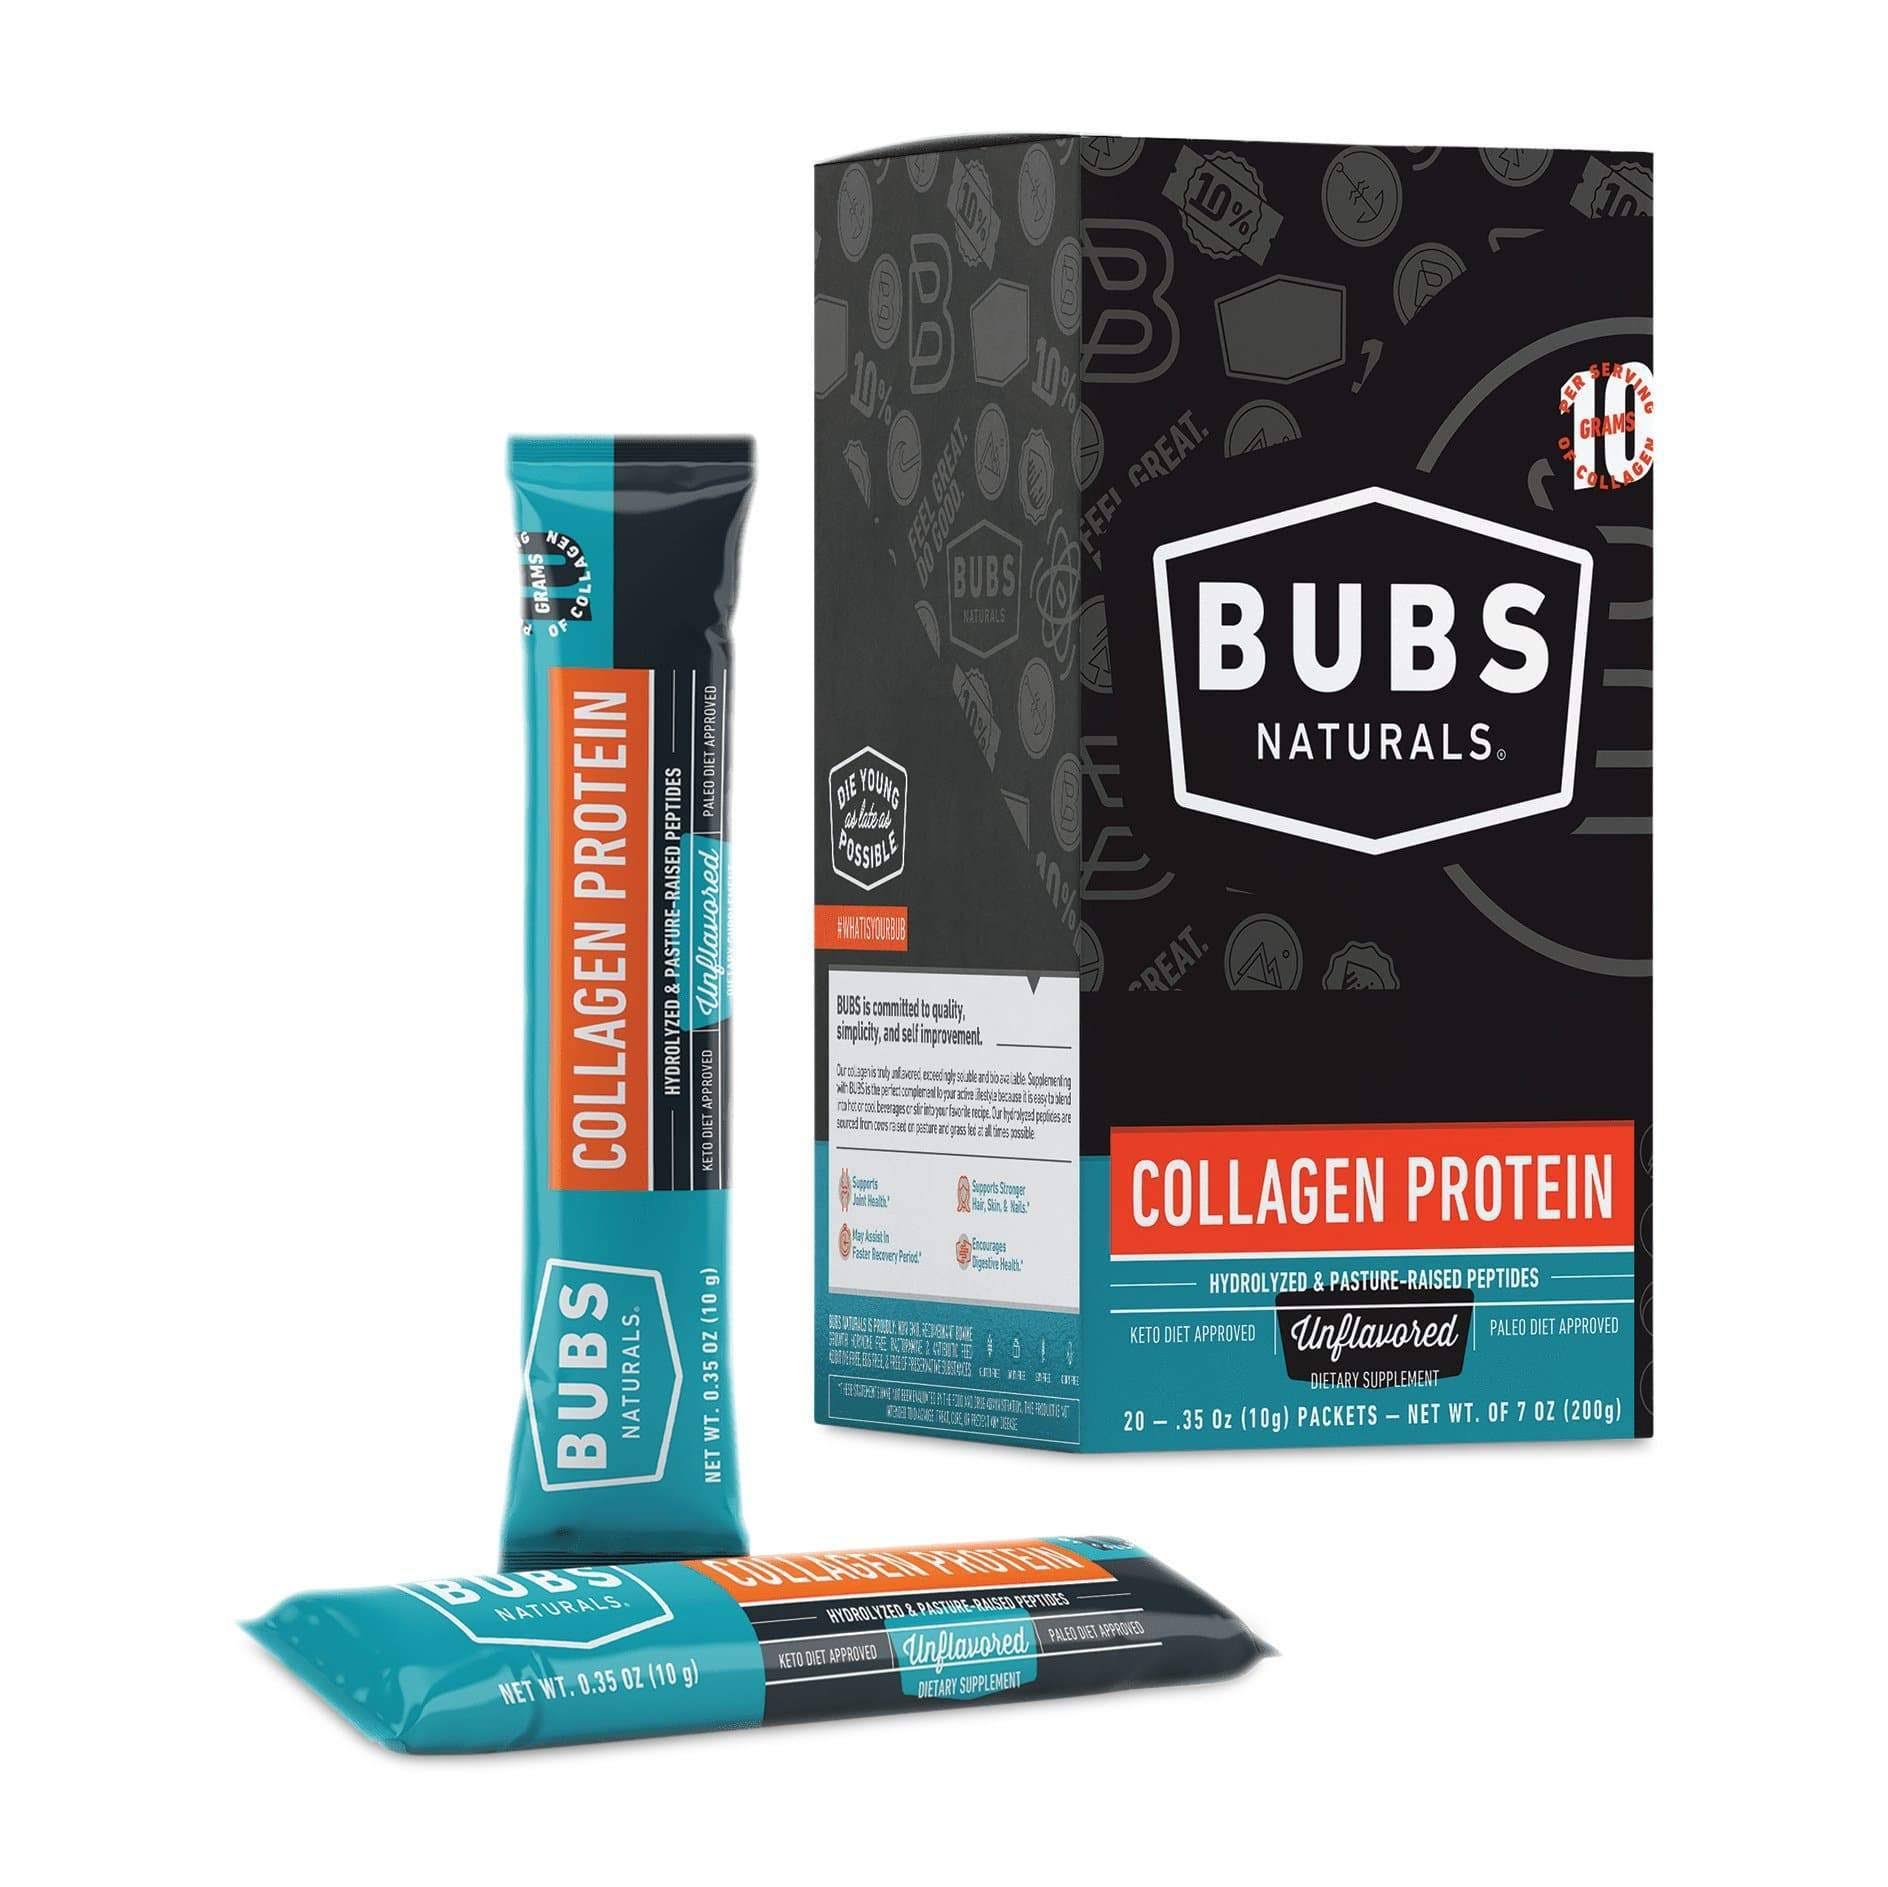 Bubs Naturals Collagen Protein - Protein